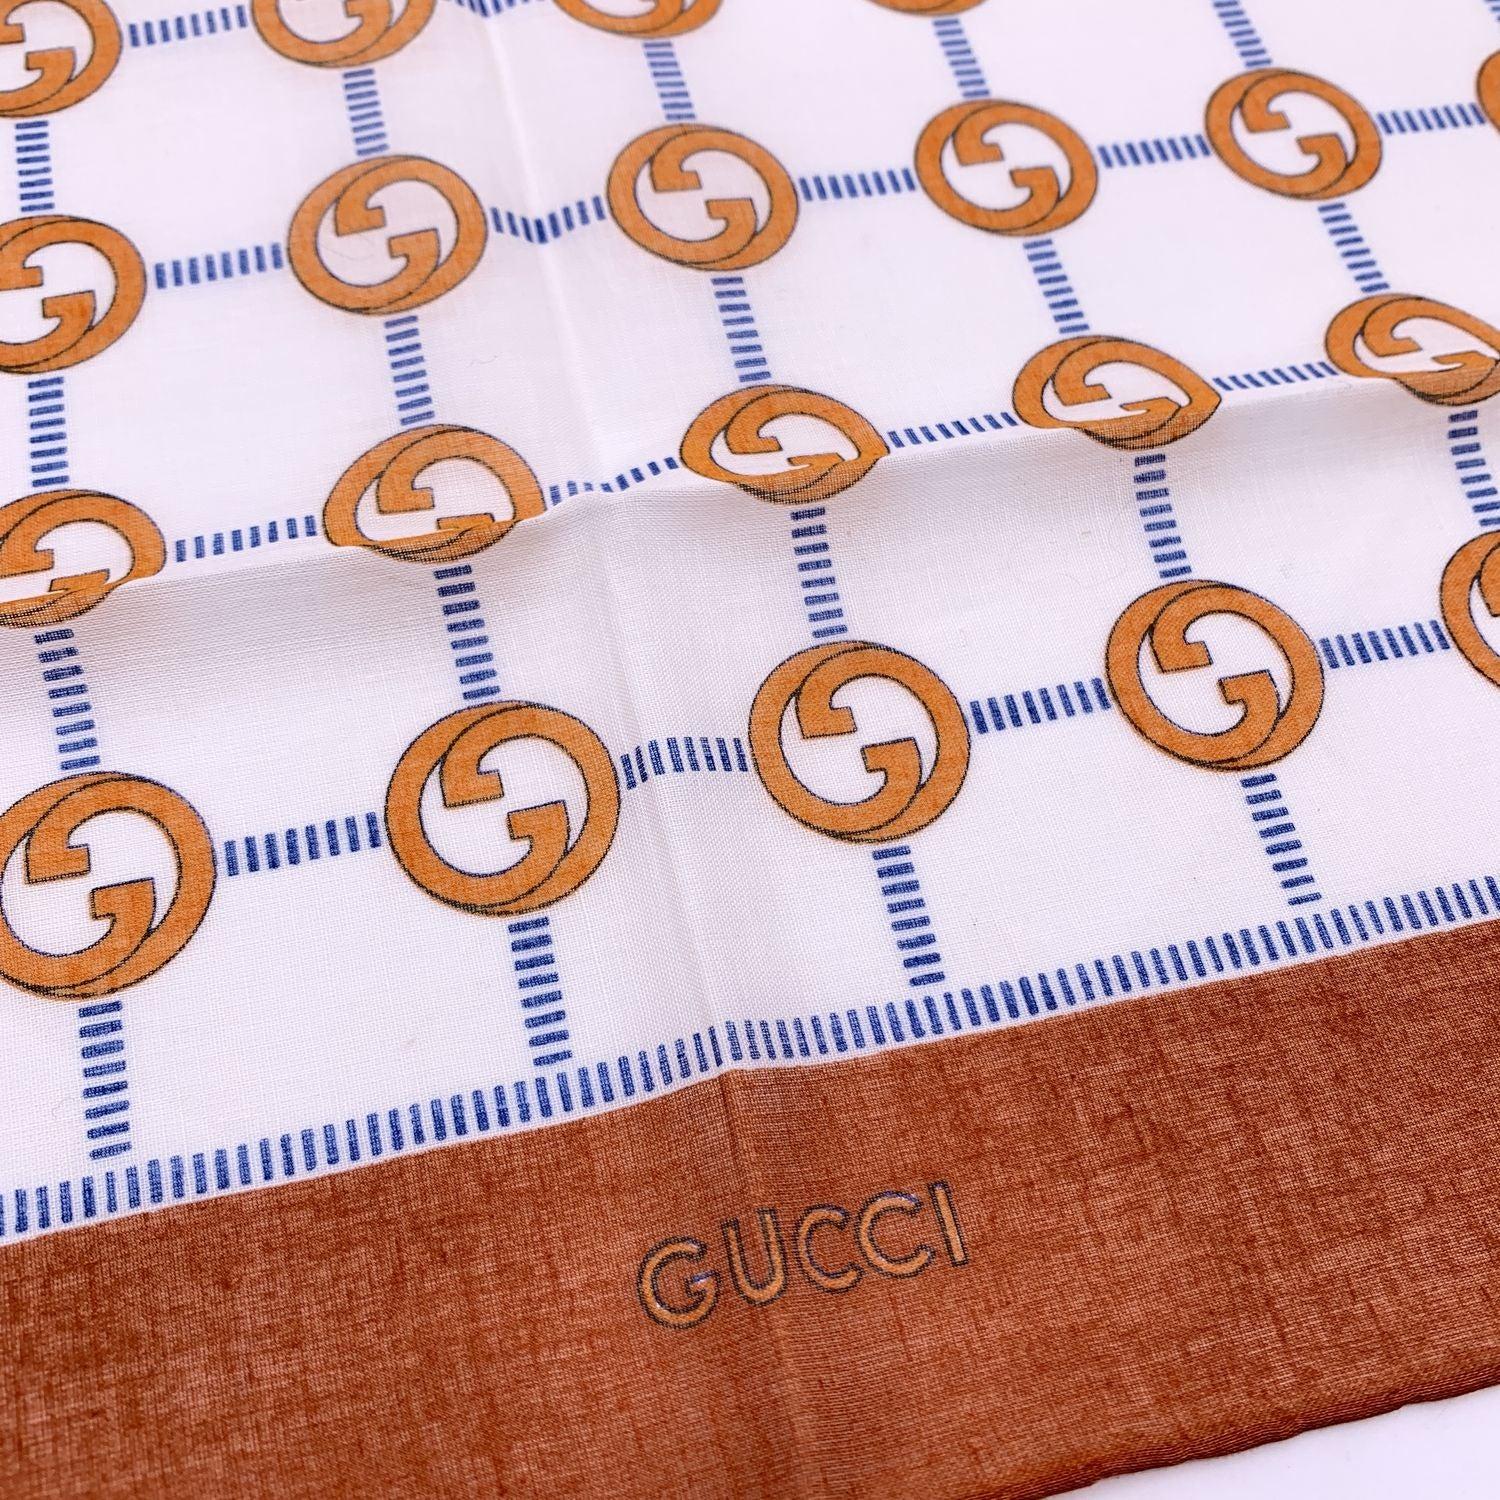 Écharpe de cou Vintage par Gucci. 100% coton. Motif du logo GG orange avec bordures orange. Signature 'Gucci' imprimée sur la bordure centrale inférieure. Approx. Dimensions : 16.5 x 16.5 inches - 42 x 42 cm Détails MATERIAL : Coton COULEUR : Orange